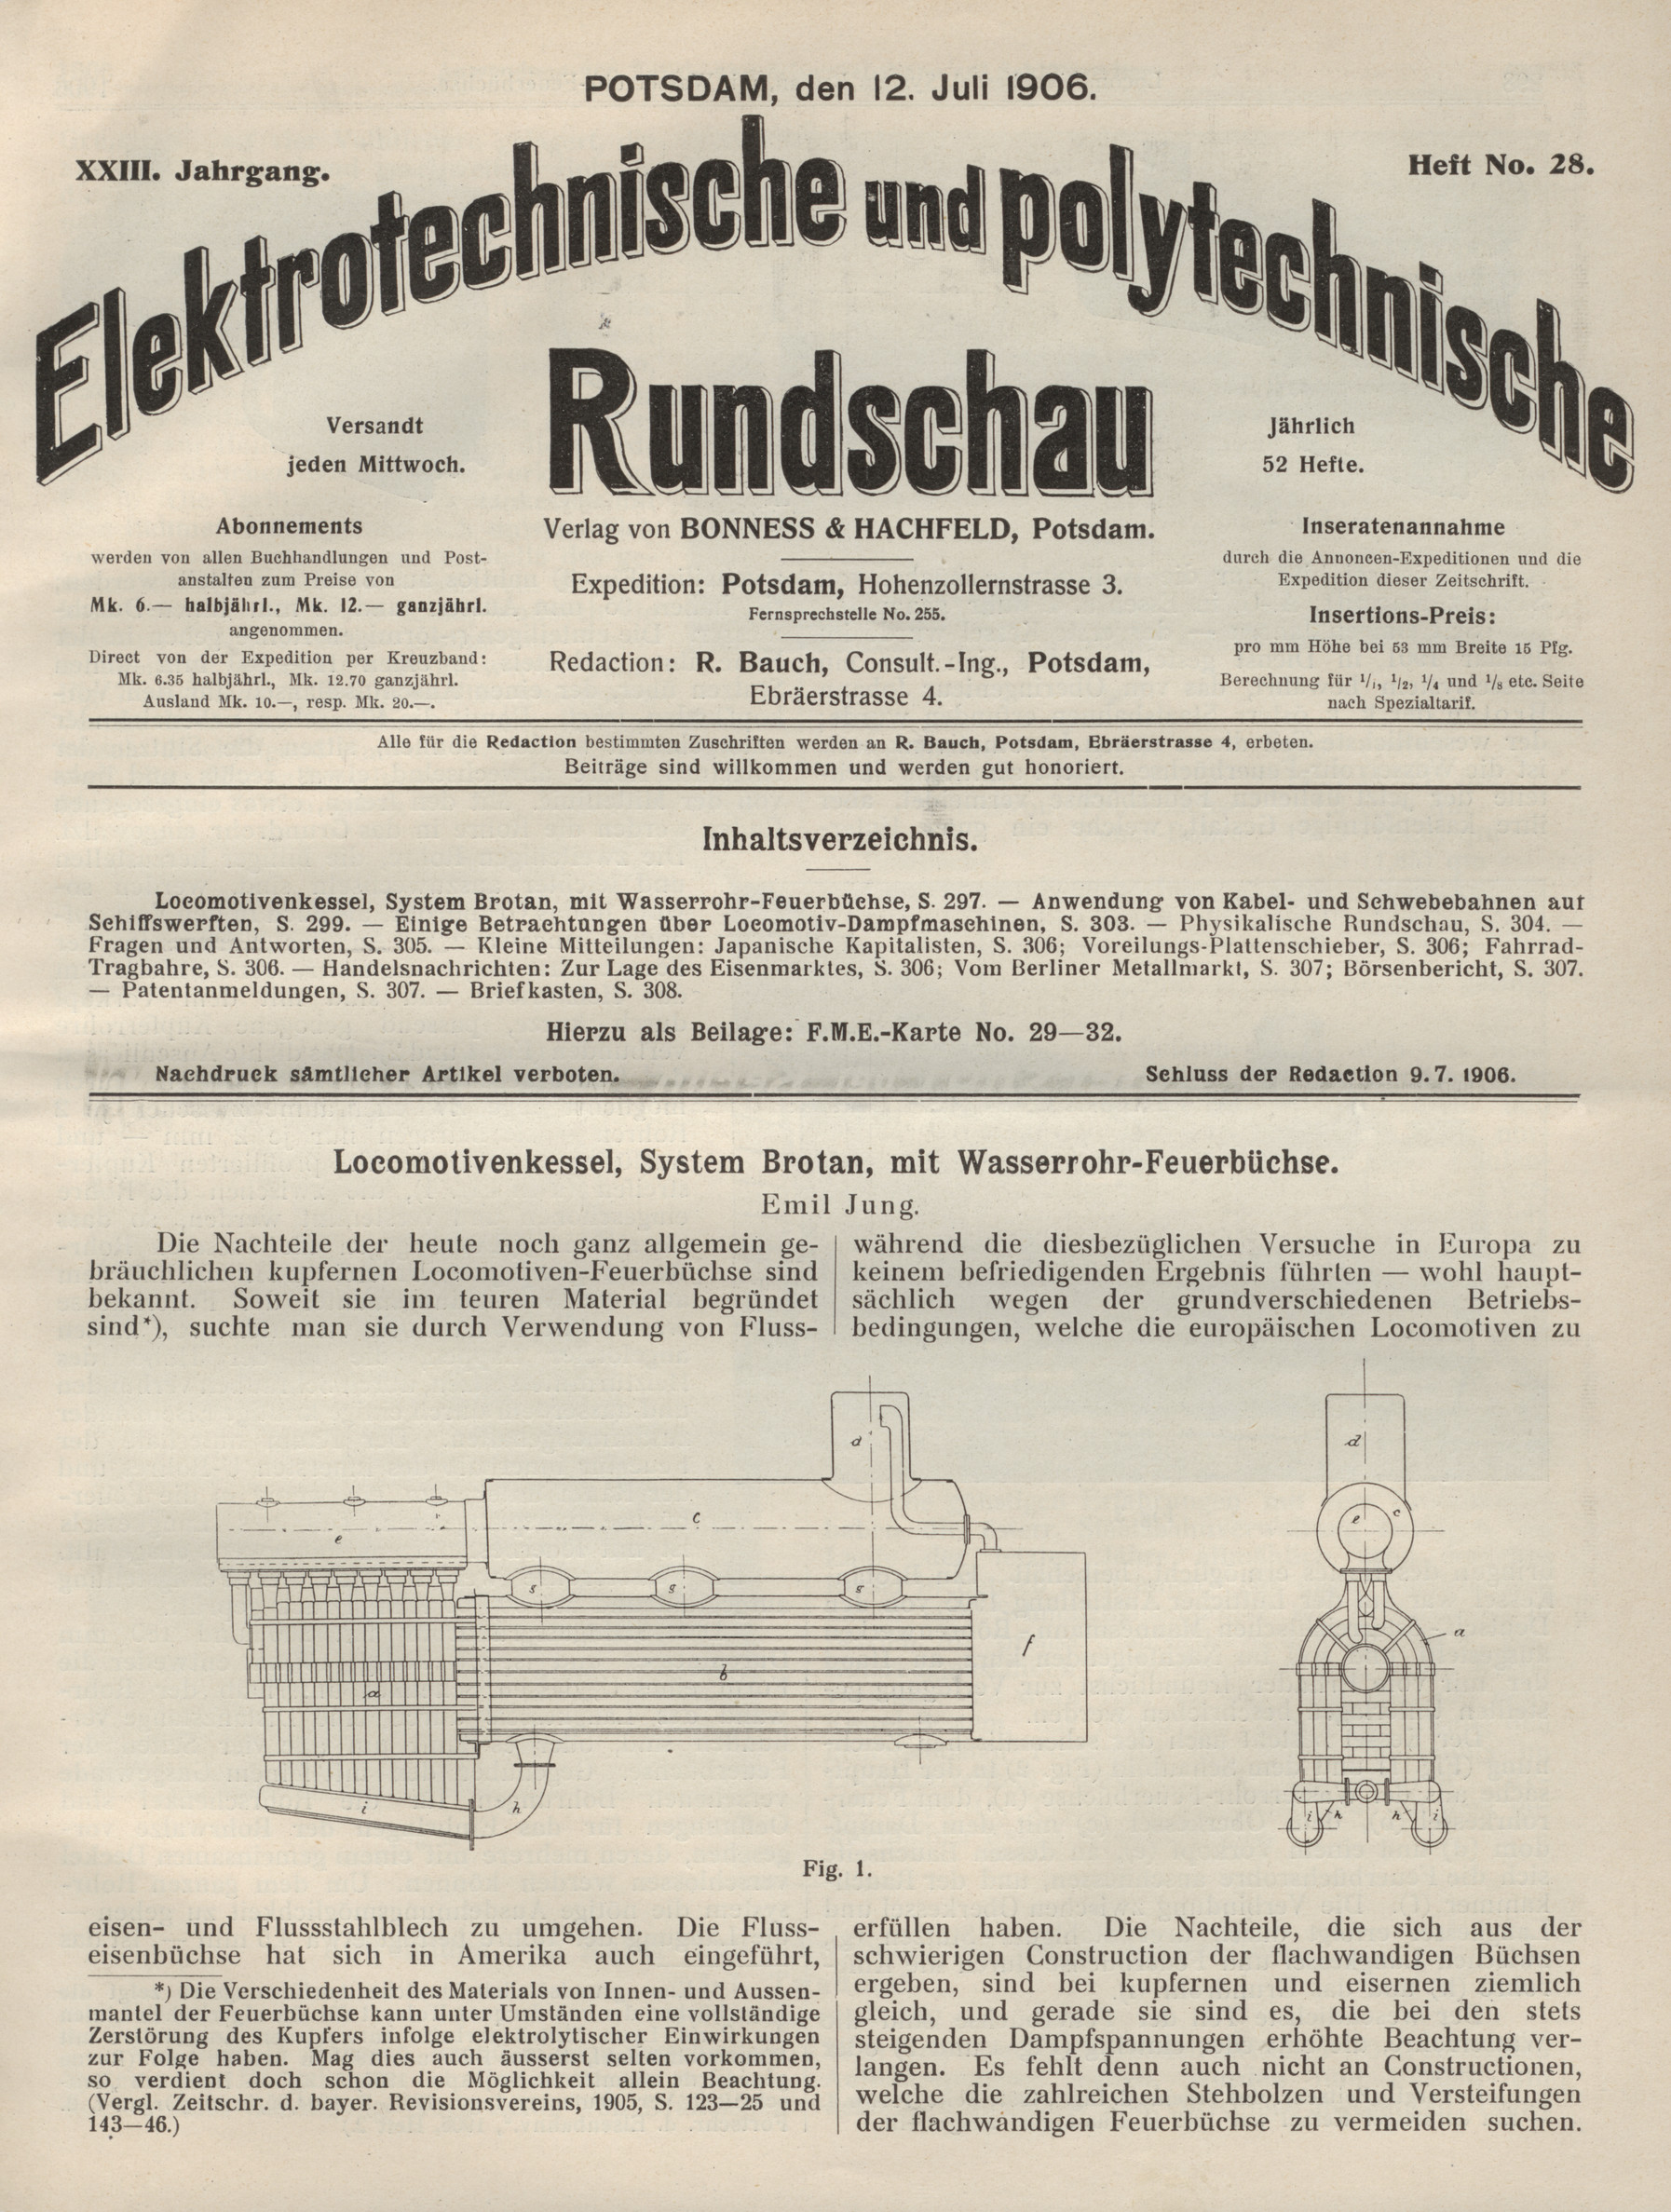 Elektrotechnische und polytechnische Rundschau, XXIII. Jahrgang, Heft No. 28